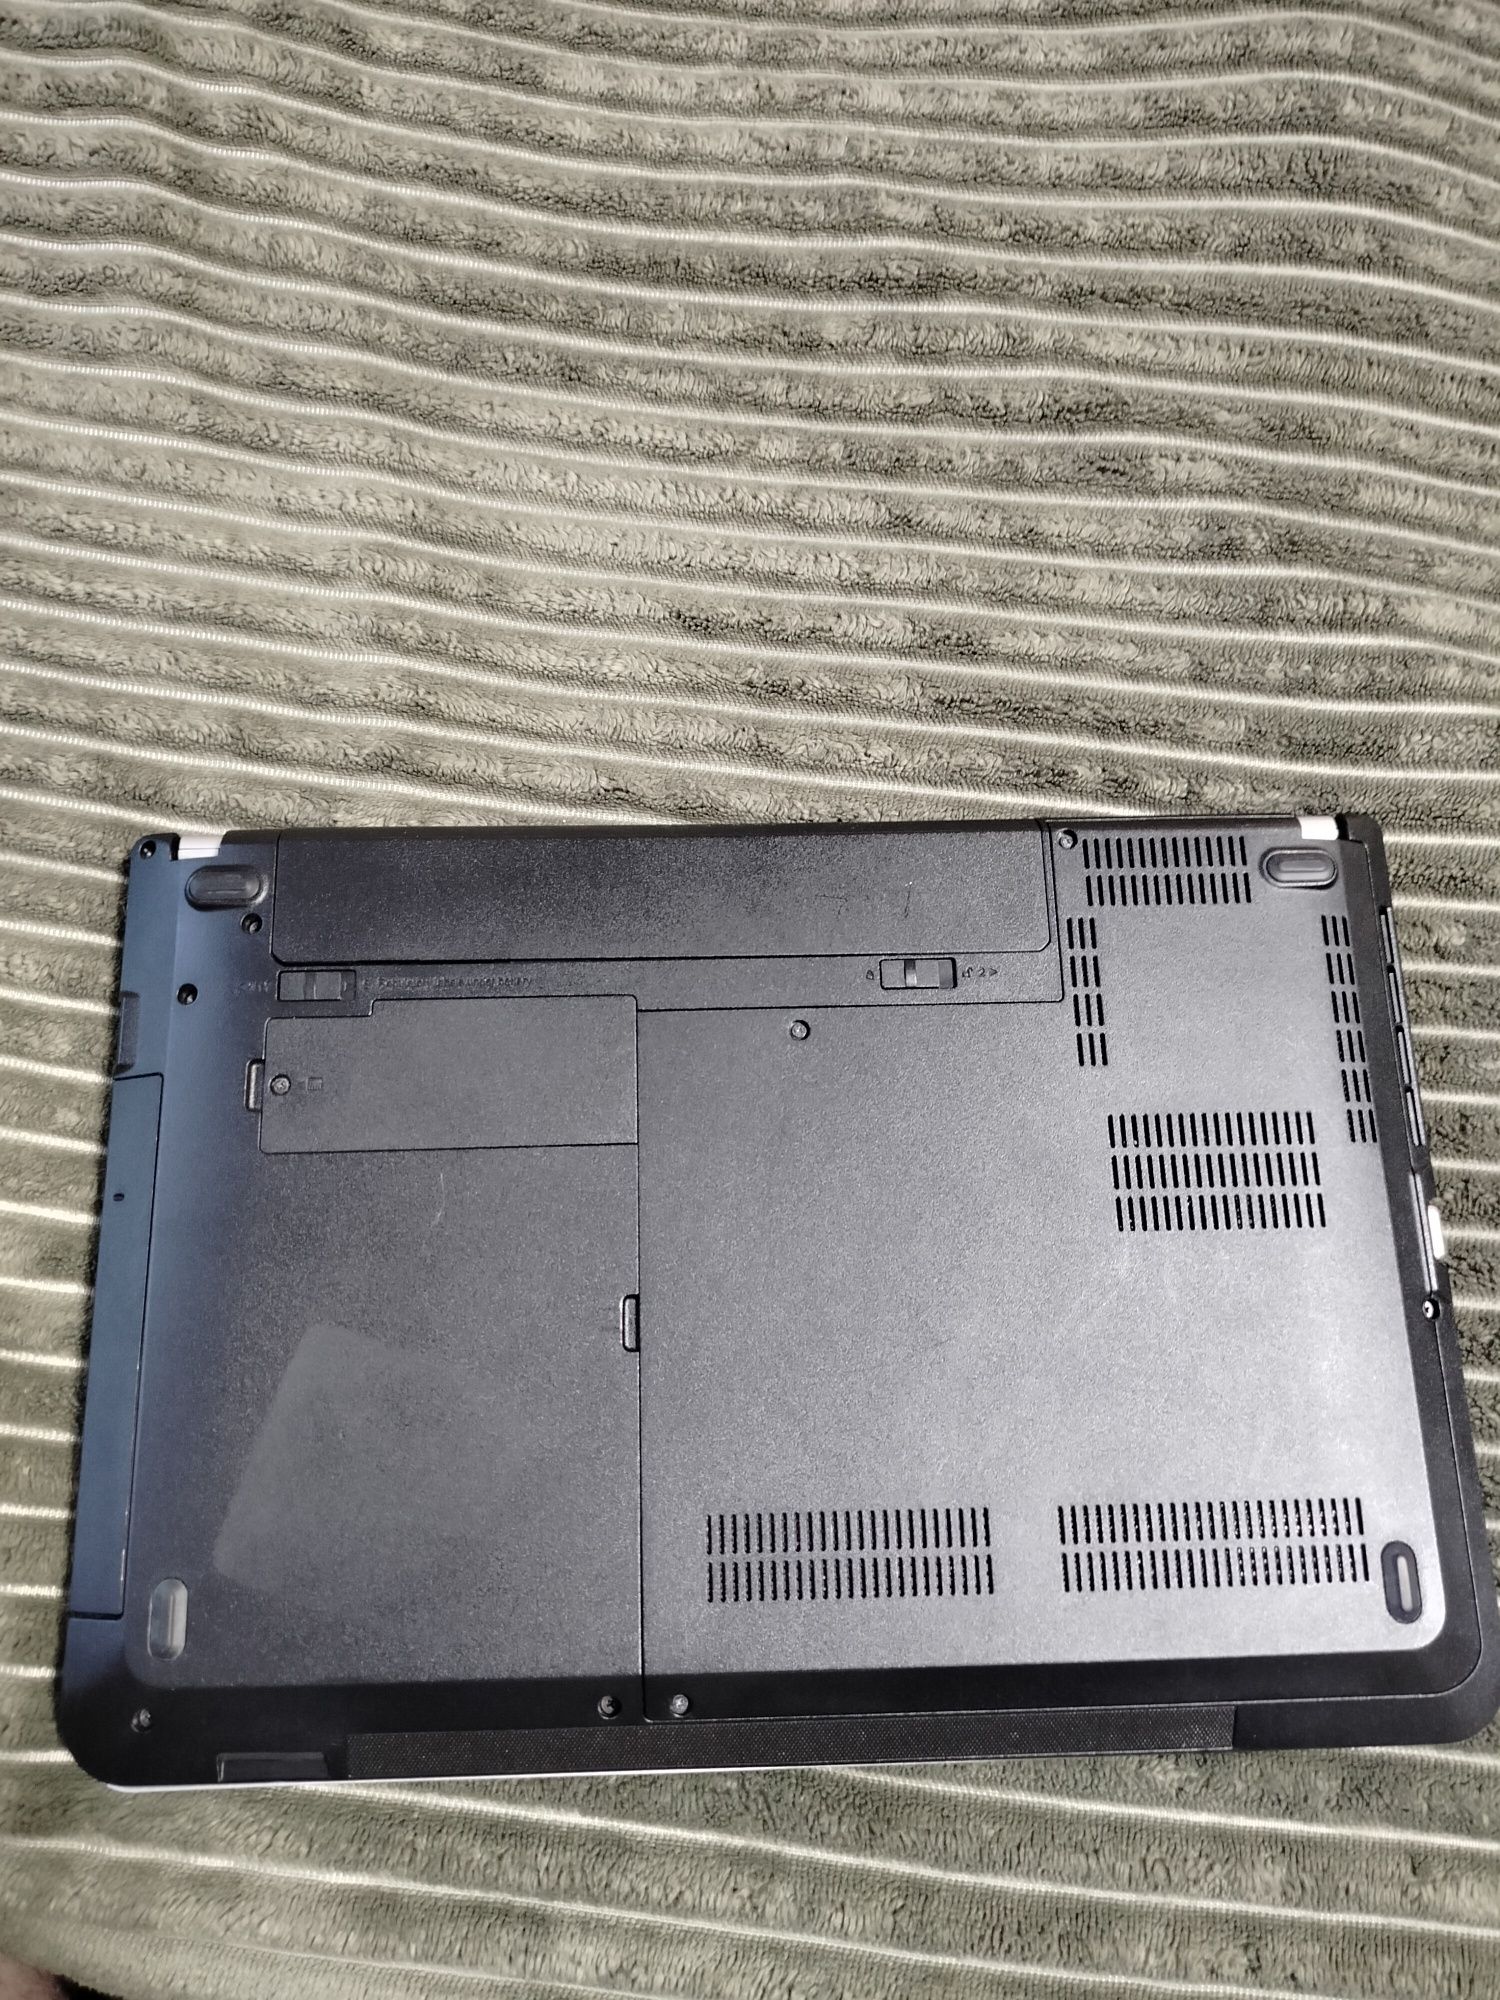 Lenovo ThinkPad edge 440 i5 4200